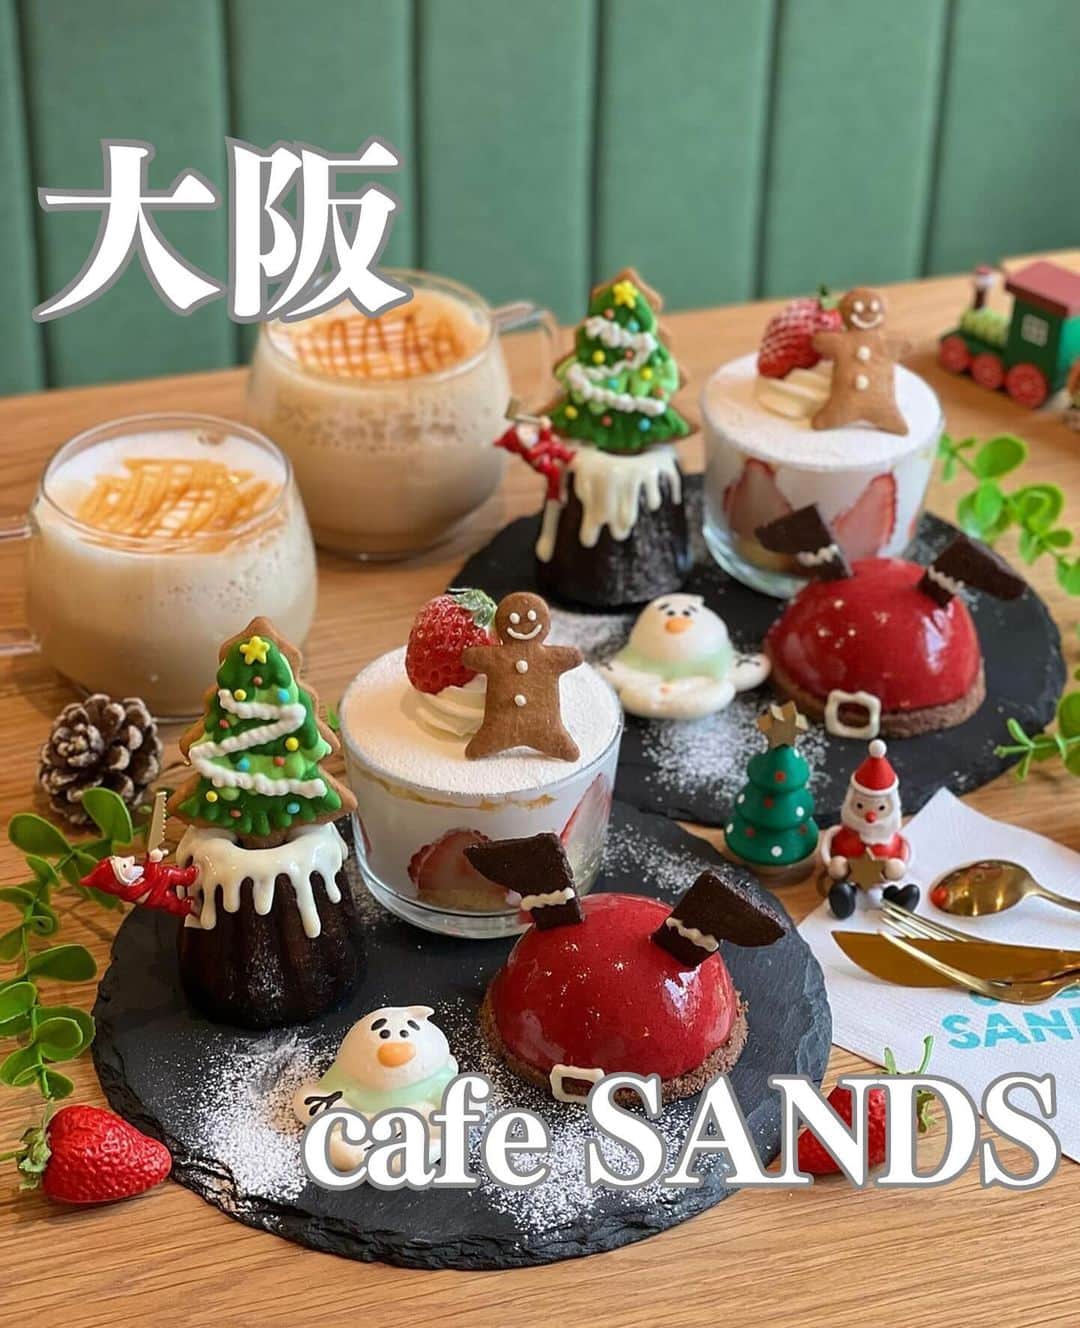 RETRIP<リトリップ>グルメのインスタグラム：「【RETRIP×大阪🎄】 こちらは、大阪・鶴橋にある「#cafesands」です。  2023年12月26日（火）まで期間限定で愉しめる「クリスマスプレート（ワンドリンク付き¥2,000）」をご紹介します🎄  プレートには、グラスショートケーキにツリーのアイシングクッキーがのったカヌレ、溶けかけのスノーマンメレンゲ、そしておっちょこちょいなサンタさんのショコラフランボワーズムースが大集合。  食べるのに勇気がいるほど愛くるしい4種のスイーツですが、一口食べるとその美味しさにも感激してしまいます✨  心あたたまる季節限定のプレートを、ぜひお楽しみくださいね🎁  ※前日までの予約必須ですので、ご来店の際はご注意ください。  [スポット情報] 📍住所：大阪府大阪市生野区桃谷4-2-3 🚃最寄り駅：鶴橋駅より徒歩15分 🕐営業時間：10:00〜18:00 🗓定休日：不定休 📝予約：可（公式アカウントのDMより） 💰支払い：現金、PayPay（カード、電子マネー不可）  ※投稿時の情報となります  ・  Photo by @chika2745  ______________________________  全国で話題のスイーツを紹介しているアカウントです！ 他の投稿はこちらから！ >> @retrip_gourmet  ______________________________  RETRIPでは「おでかけ」に関する様々な情報を発信しています。ぜひ他のアカウントもチェックしてくださいね！ . @retrip_news 最新のおでかけ情報を紹介 @retrip_nippon 日本の絶景を紹介 @retrip_global 海外の絶景を紹介 @retrip_gourmet 全国の話題のグルメを紹介 @retrip_cafe 全国のおしゃれなカフェを紹介 . ▼RETRIP[リトリップ]のアプリ 最新情報をまとめてご覧になりたい方には『RETRIPアプリ』がおすすめ！明日のお出かけにすぐ活かせるアイディアが盛りだくさんです✨プロフィールのURLからダウンロードできますので、ぜひご利用ください。 .  ______________________________  #retrip #リトリップ #retrip_groumet #retrip_cafe #国内グルメ #東京グルメ #国内カフェ #東京カフェ #グルメ日記 #飯テロ #食べ歩き #groumetstagram #japanesefood #カフェ #スイーツ #カフェ巡り #かふぇすたぐらむ #スイーツ好きと繋がりたい #instafood #大阪 #鶴橋 #大阪グルメ #大阪スイーツ #大阪カフェ #鶴橋カフェ #鶴橋グルメ #期間限定 #クリスマス #クリスマススイーツ」